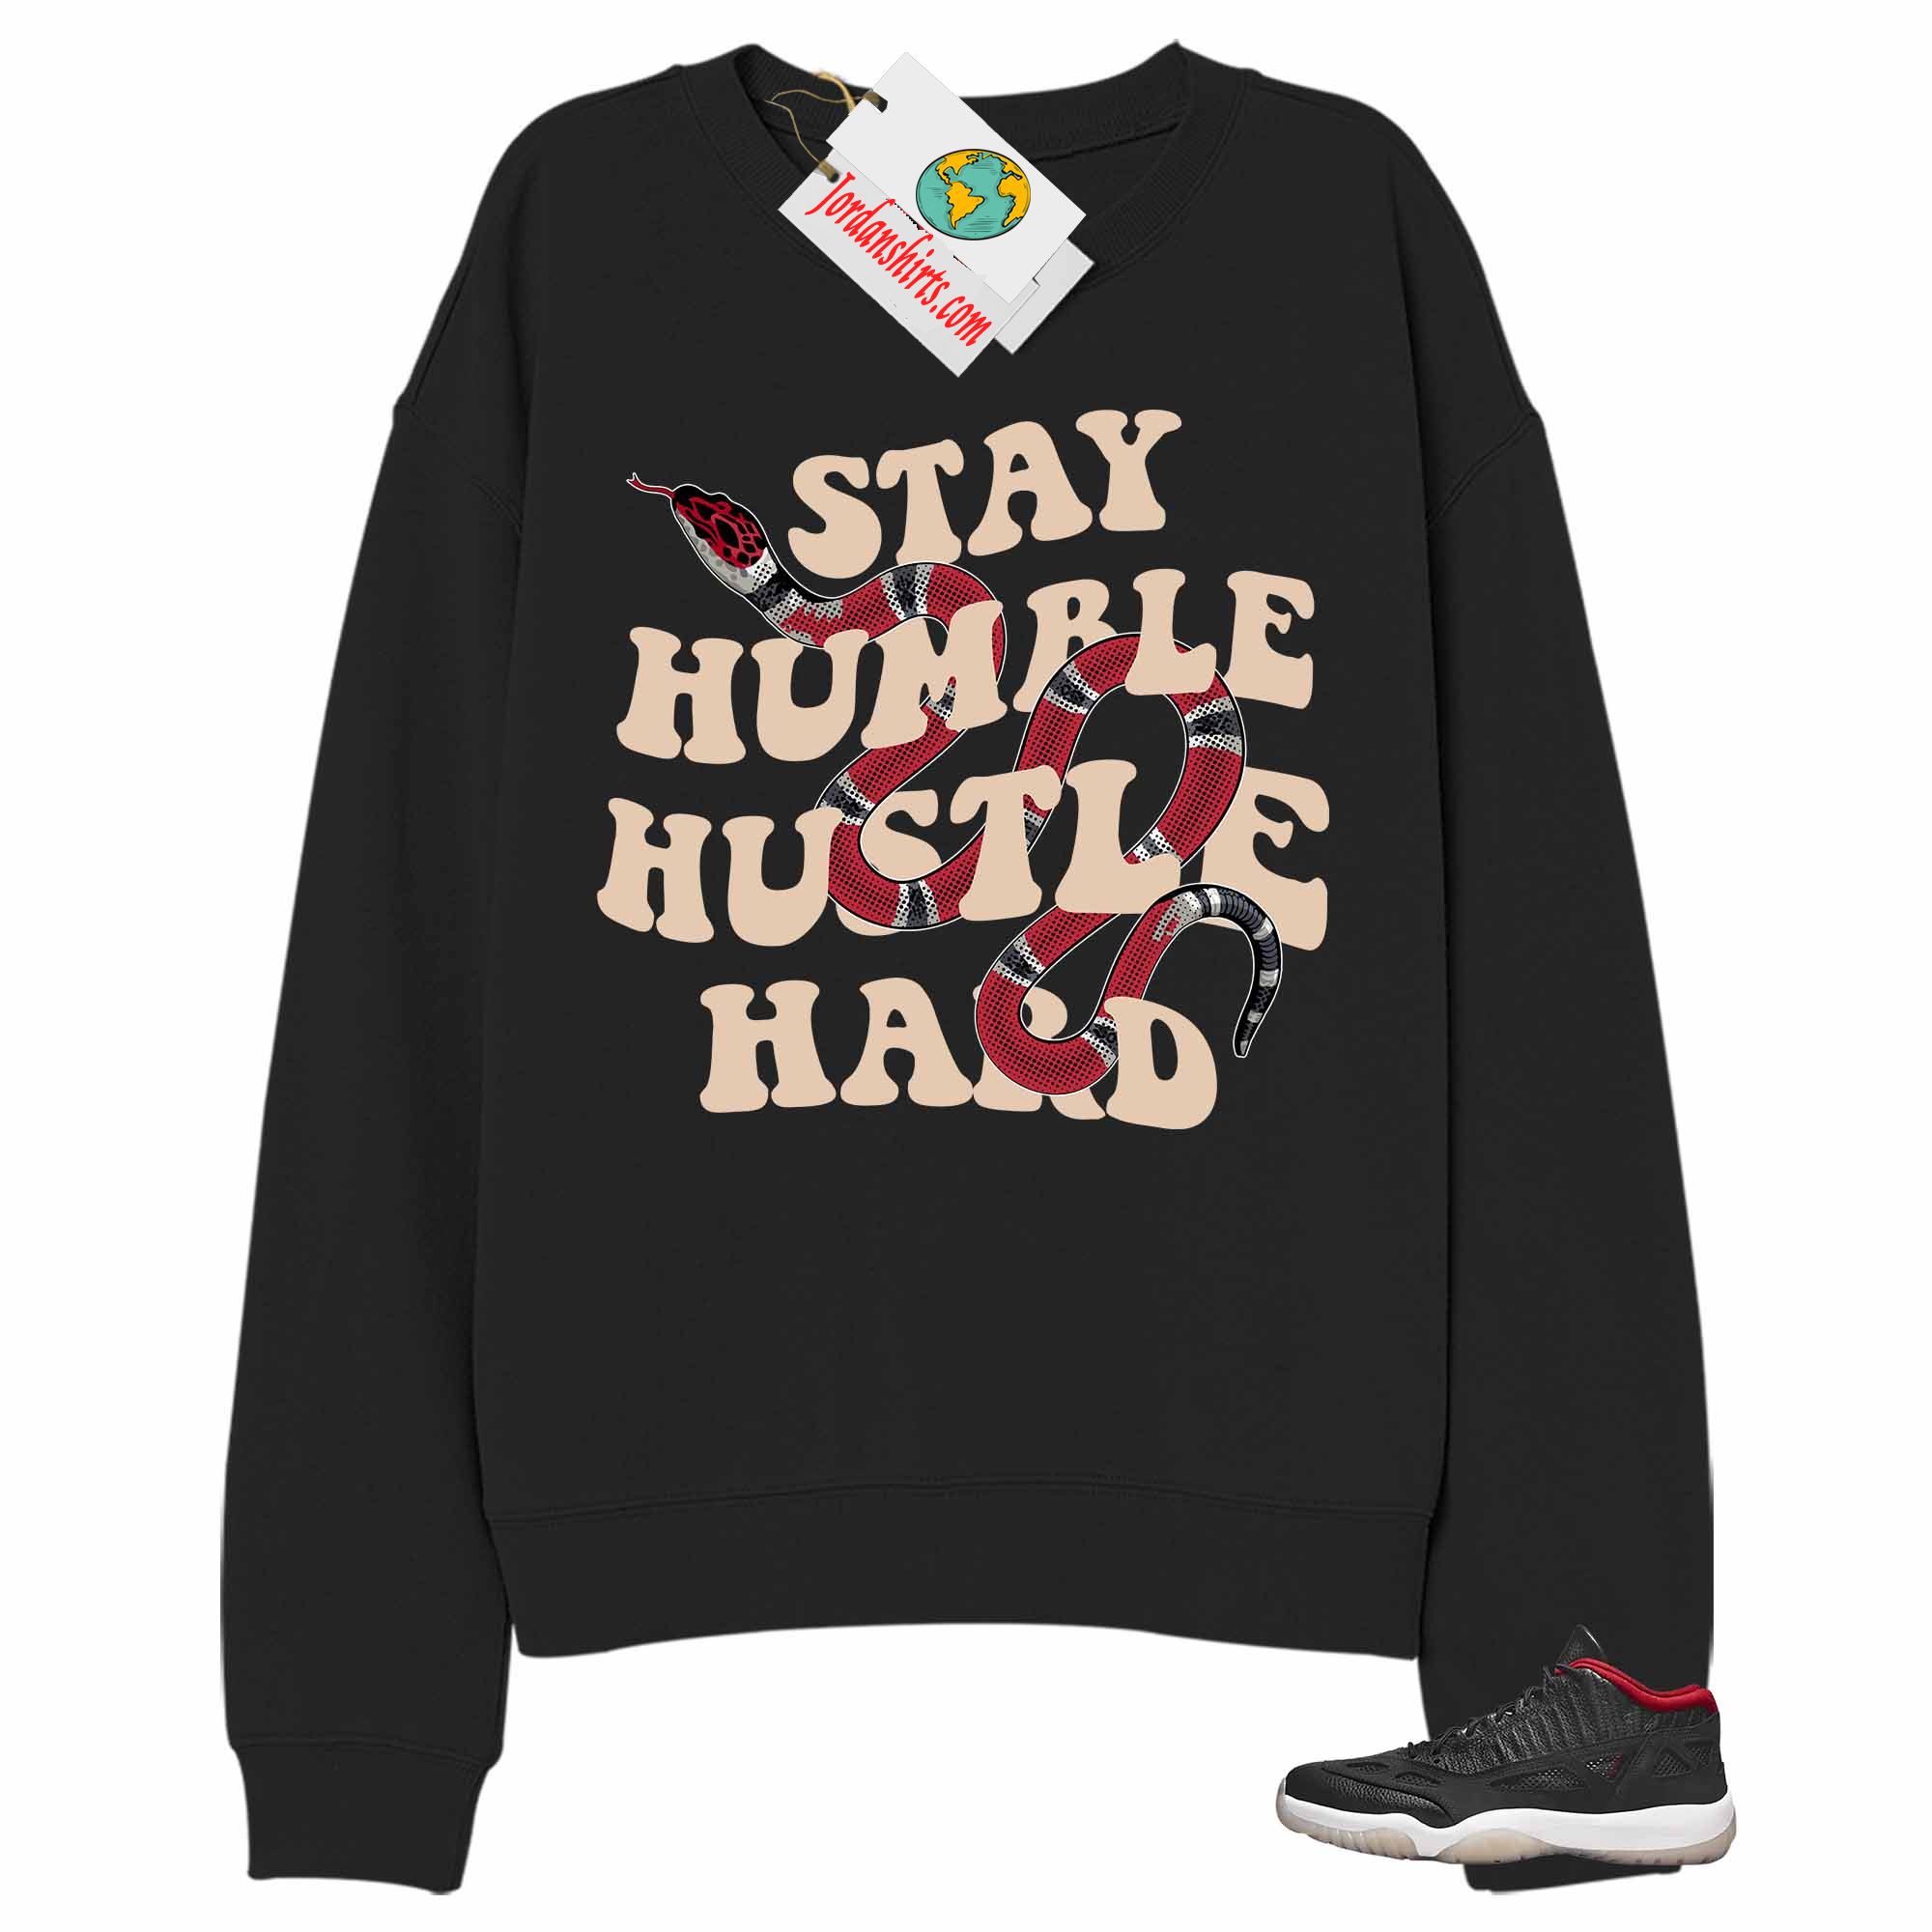 Jordan 11 Sweatshirt, Stay Humble Hustle Hard King Snake Black Sweatshirt Air Jordan 11 Bred 11s Plus Size Up To 5xl